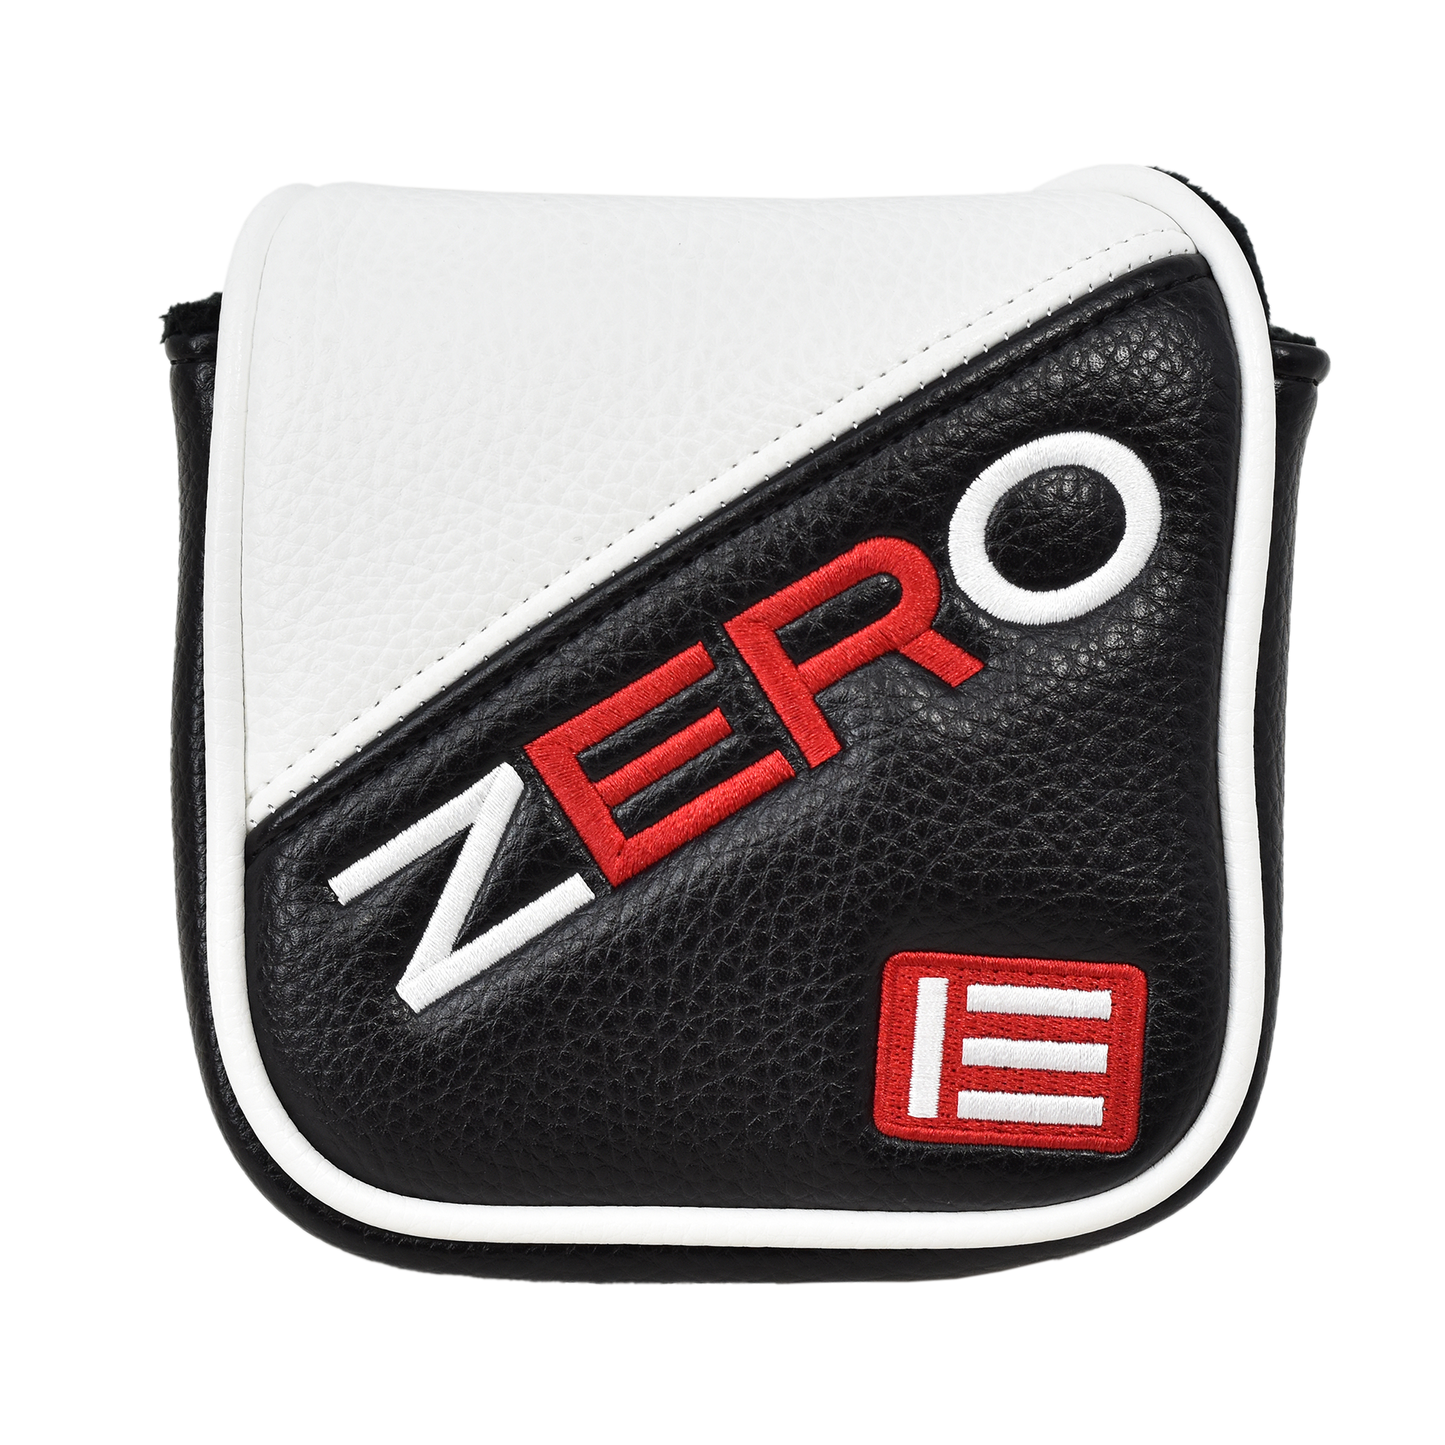 ER Zero Z.1 High MOI Mallet Putter